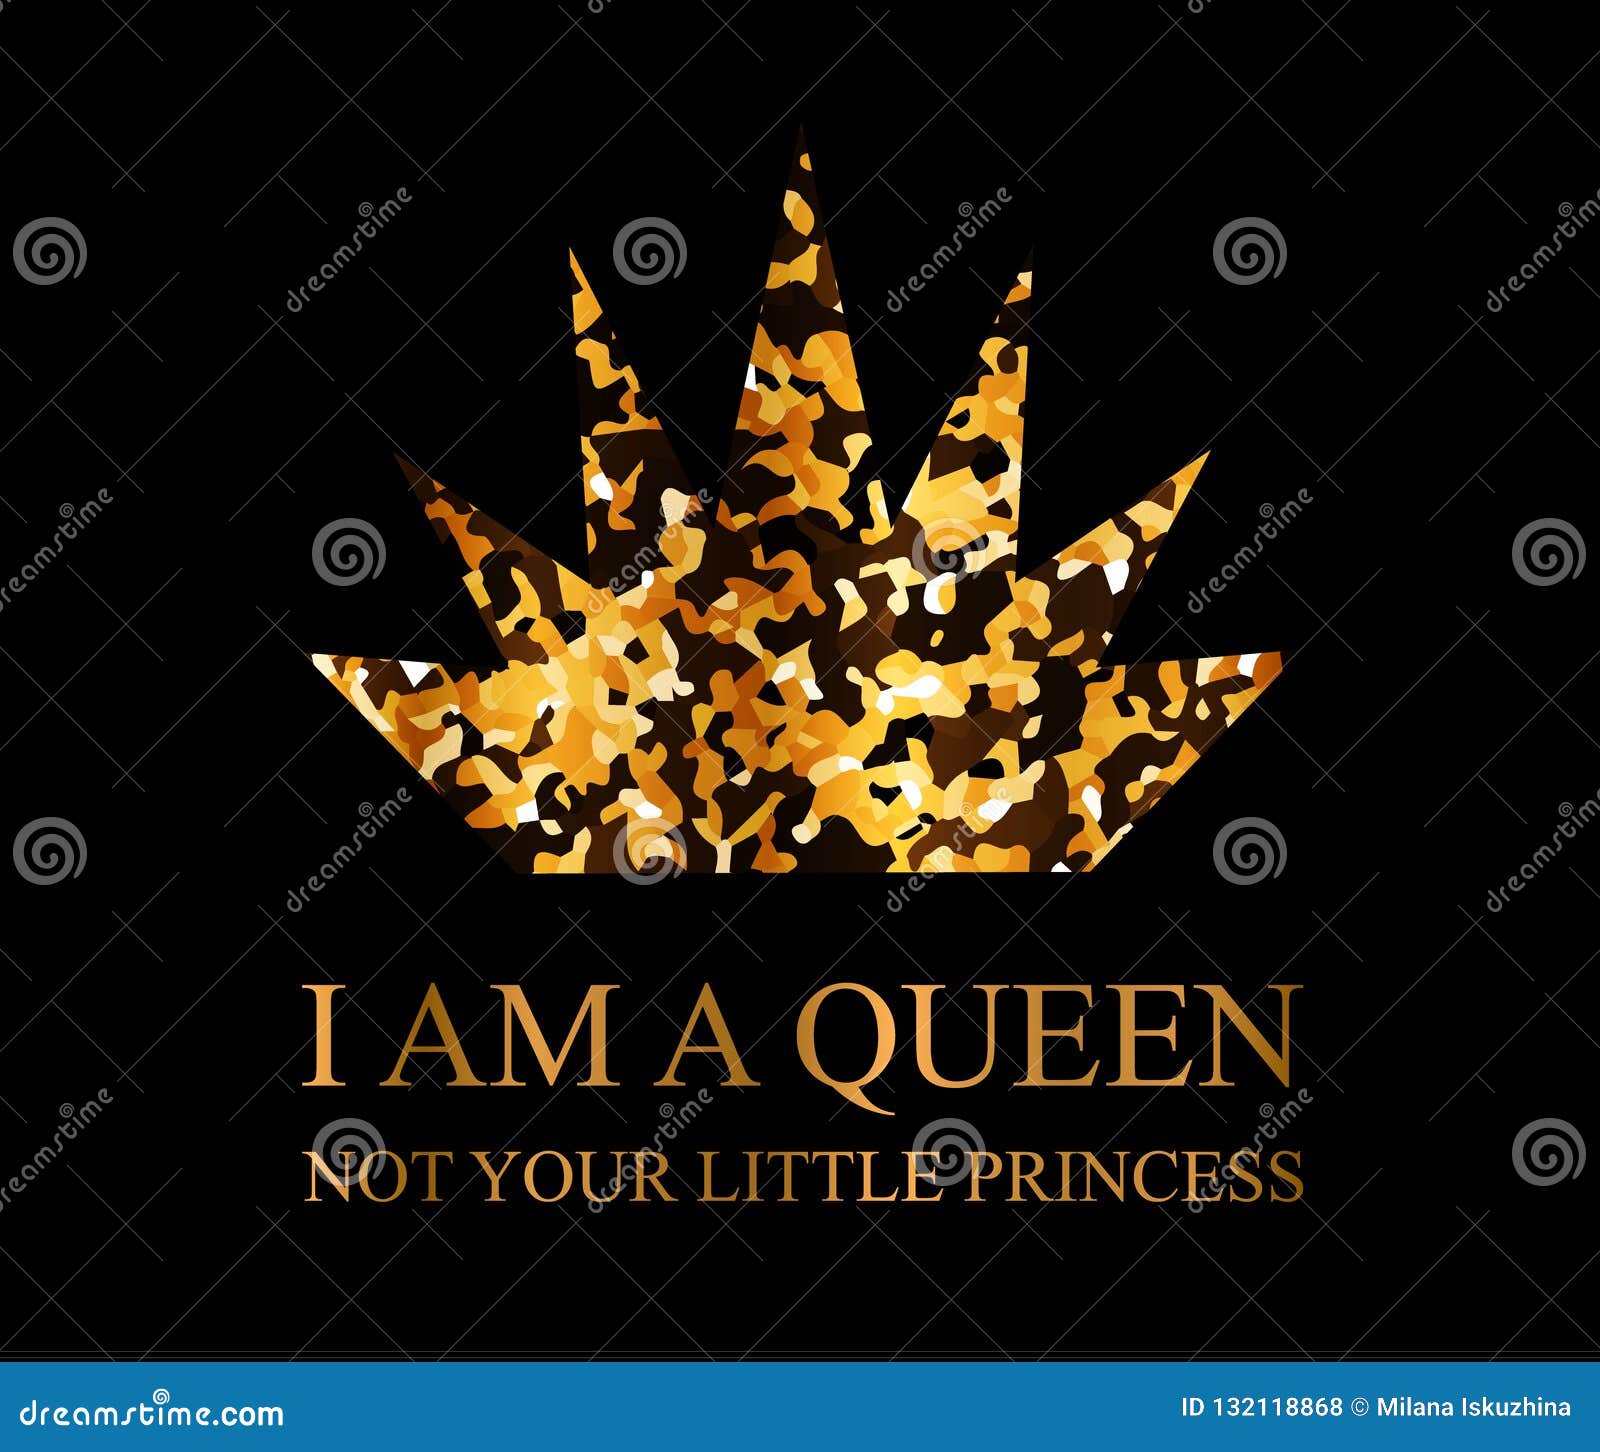 我是女王设计元素素材免费下载(图片编号:6106090)-六图网